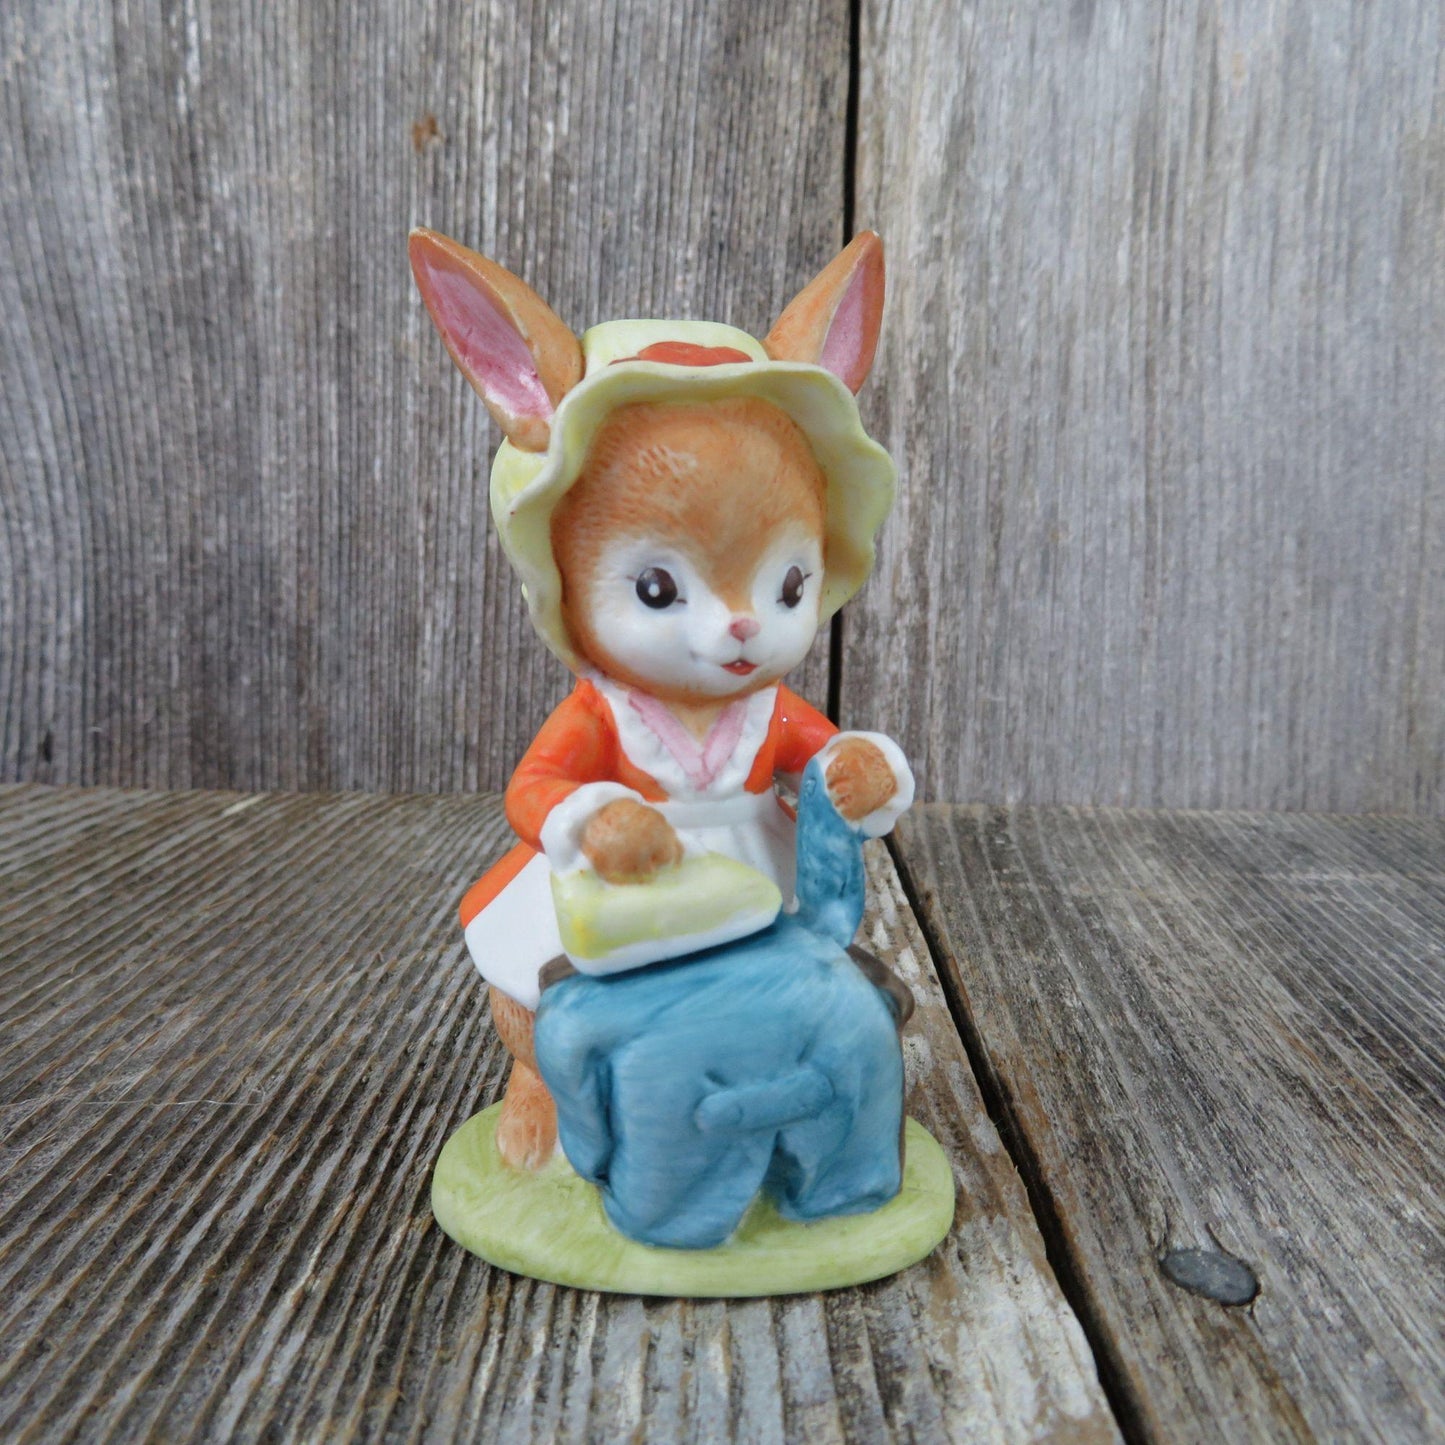 Vintage Bunny Ironing Figurine Lefton China 2264 Rabbit Orange Dress Bonnet Laundry Blue Shirt